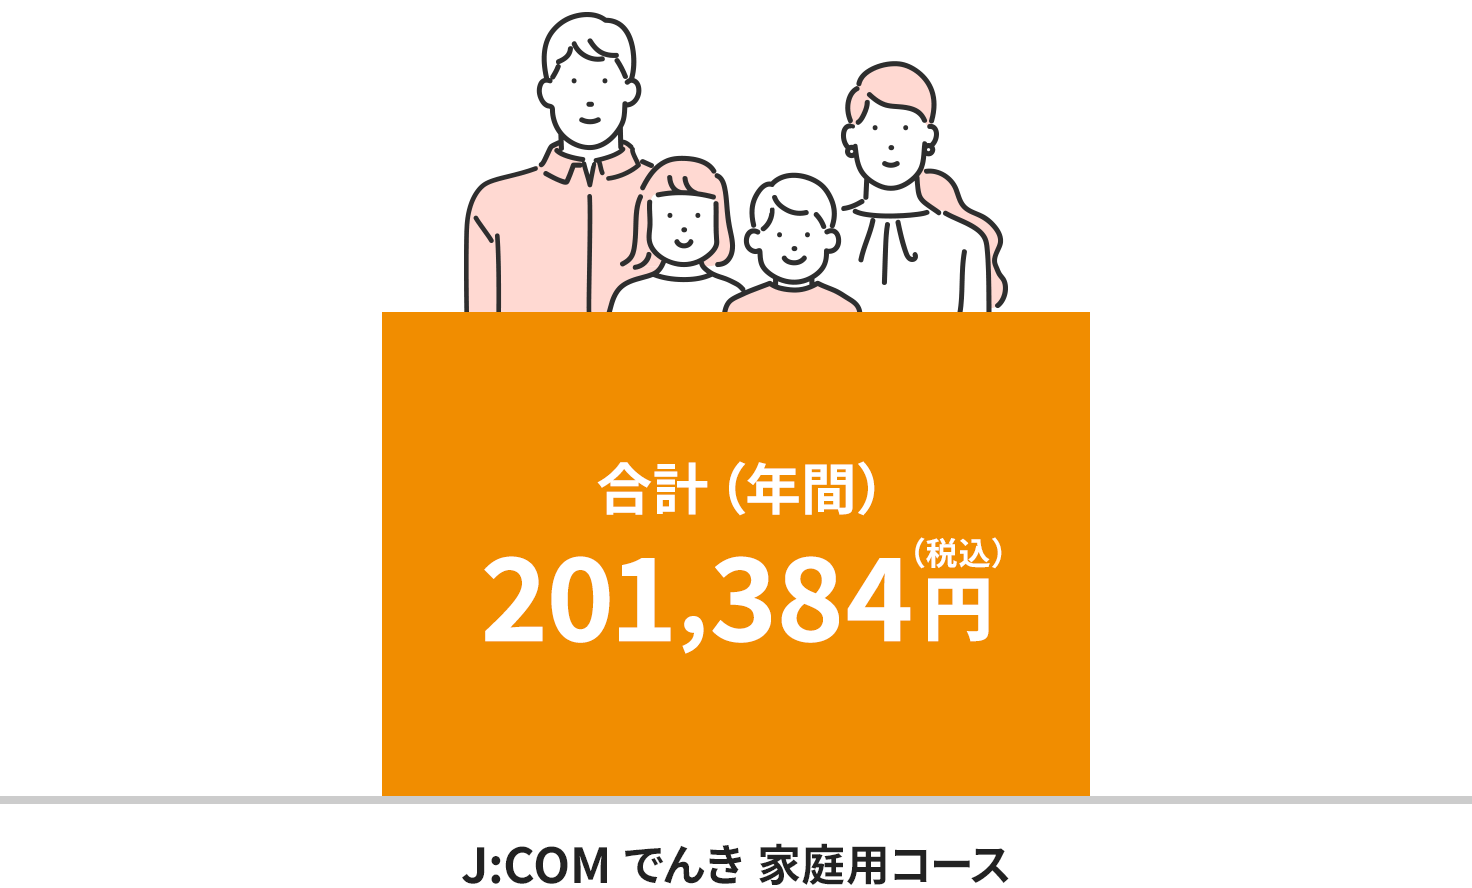 Hình ảnh phí tại khu vực Điện lực Kyushu (dành cho hộ gia đình 4 người)